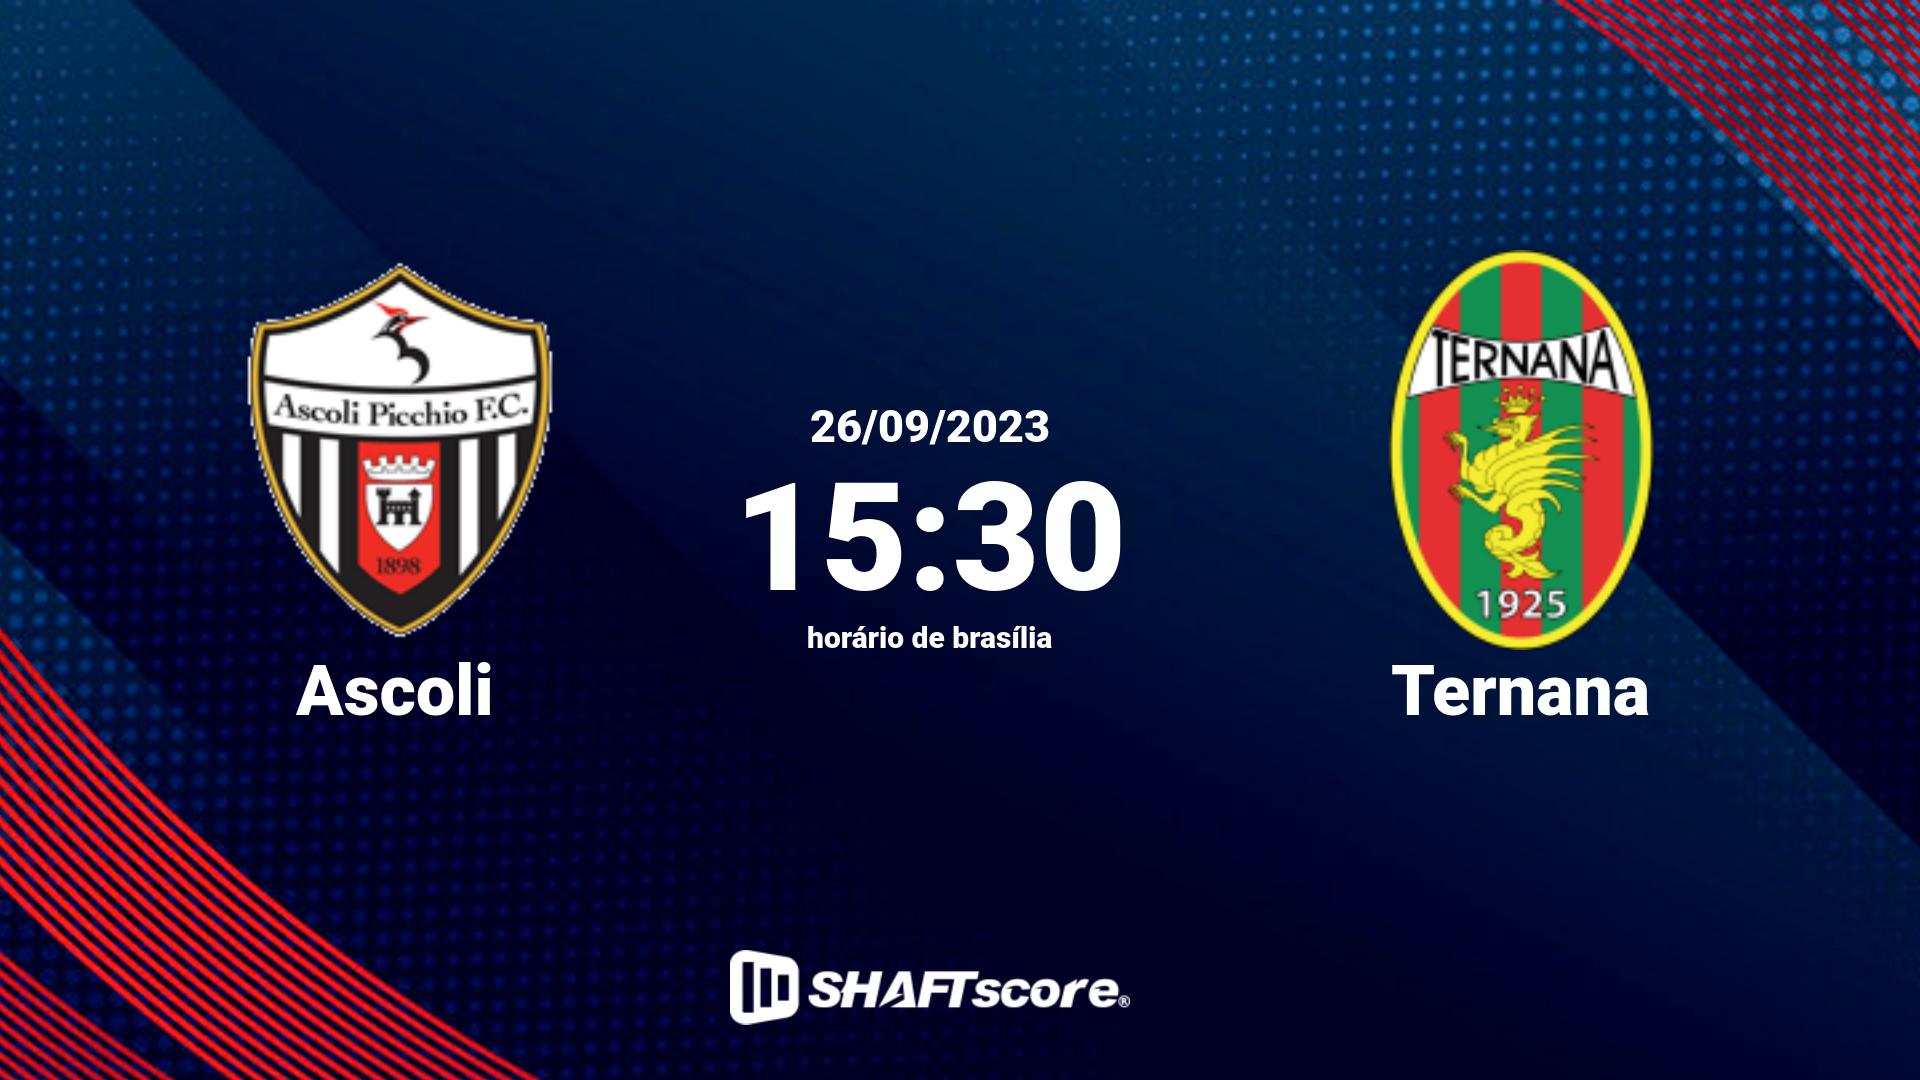 Estatísticas do jogo Ascoli vs Ternana 26.09 15:30